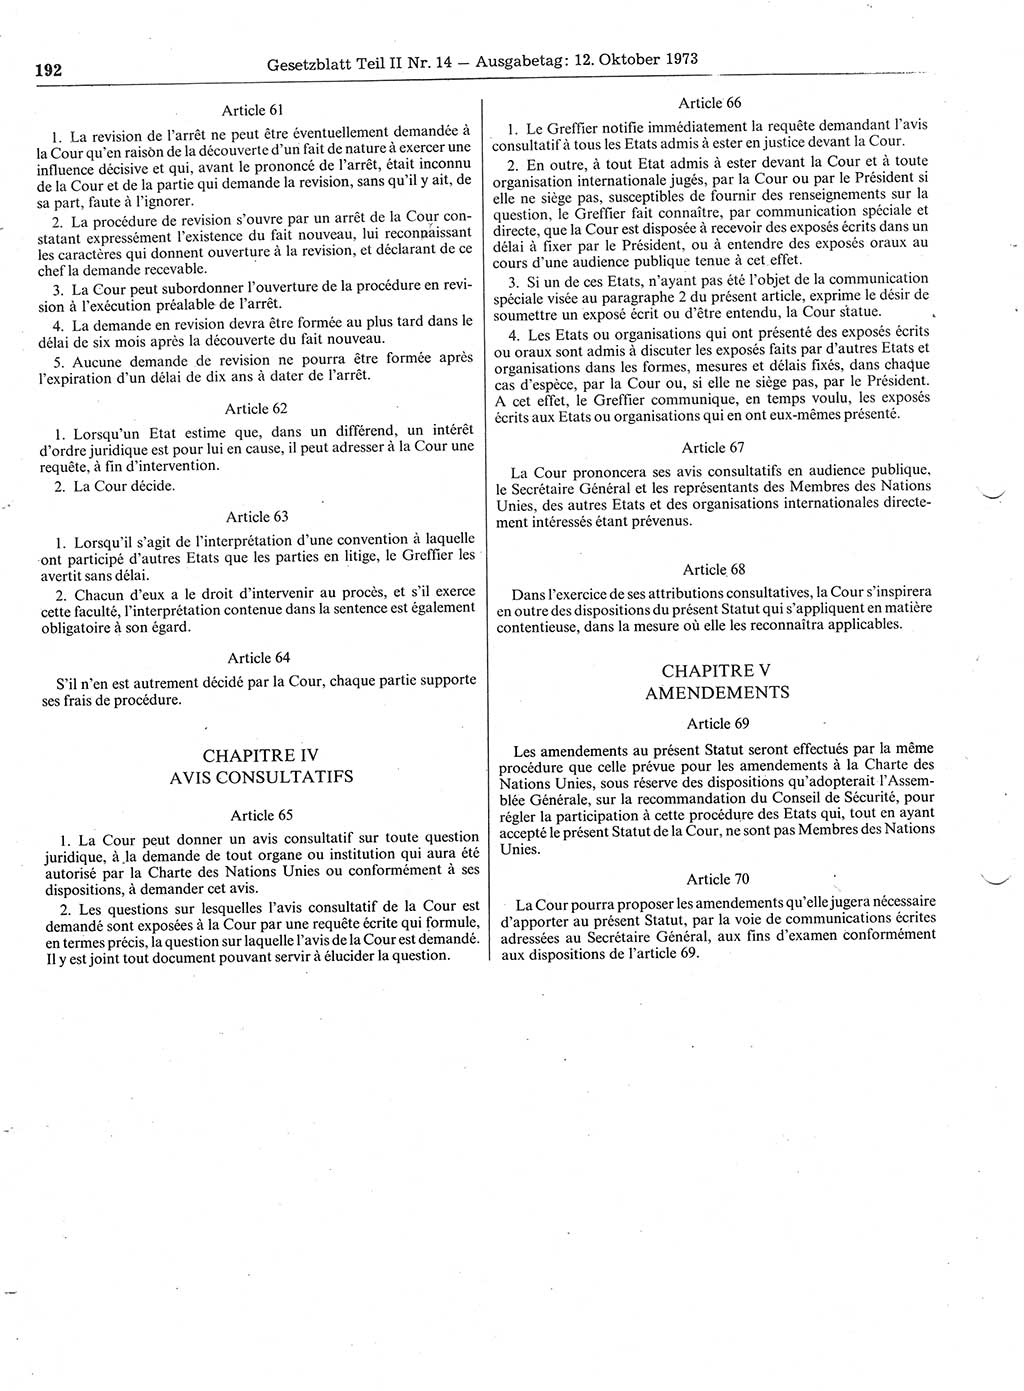 Gesetzblatt (GBl.) der Deutschen Demokratischen Republik (DDR) Teil ⅠⅠ 1973, Seite 192 (GBl. DDR ⅠⅠ 1973, S. 192)